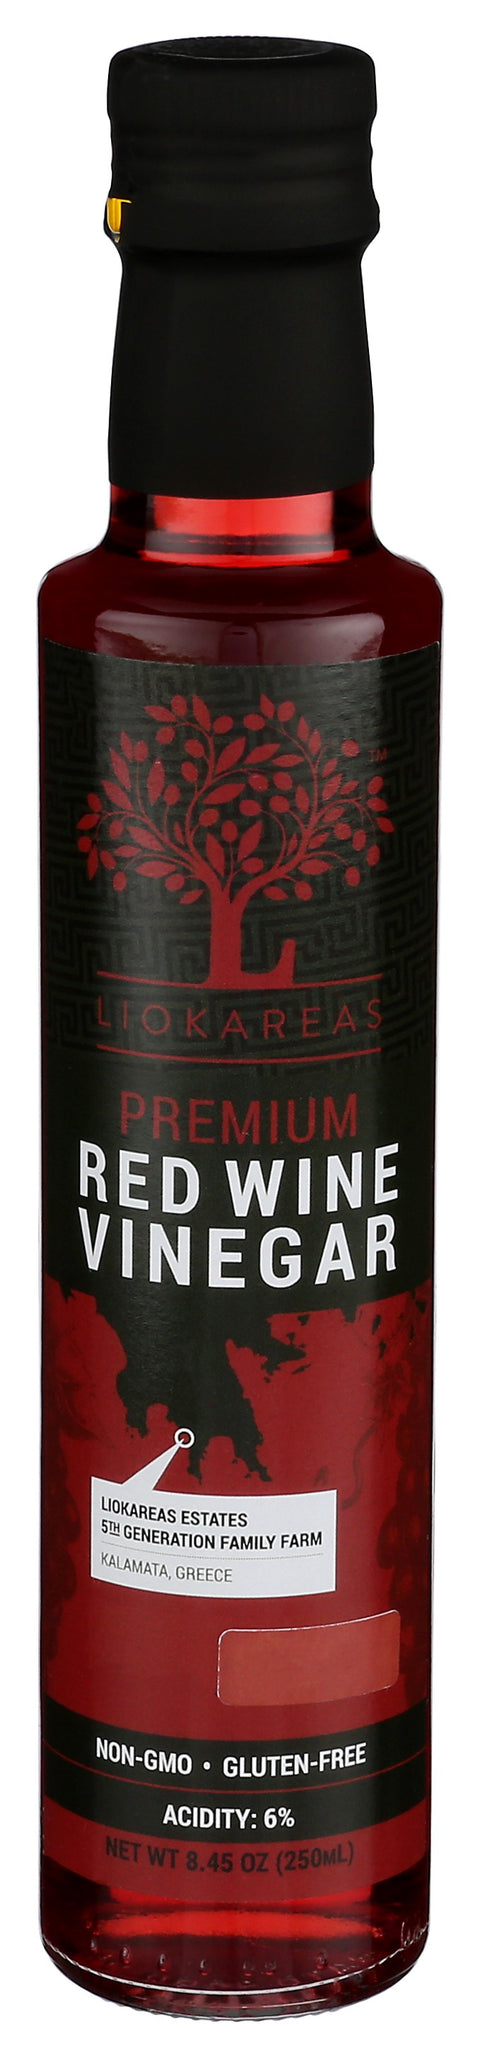 Premium Red Wine Vinegar - 250ml